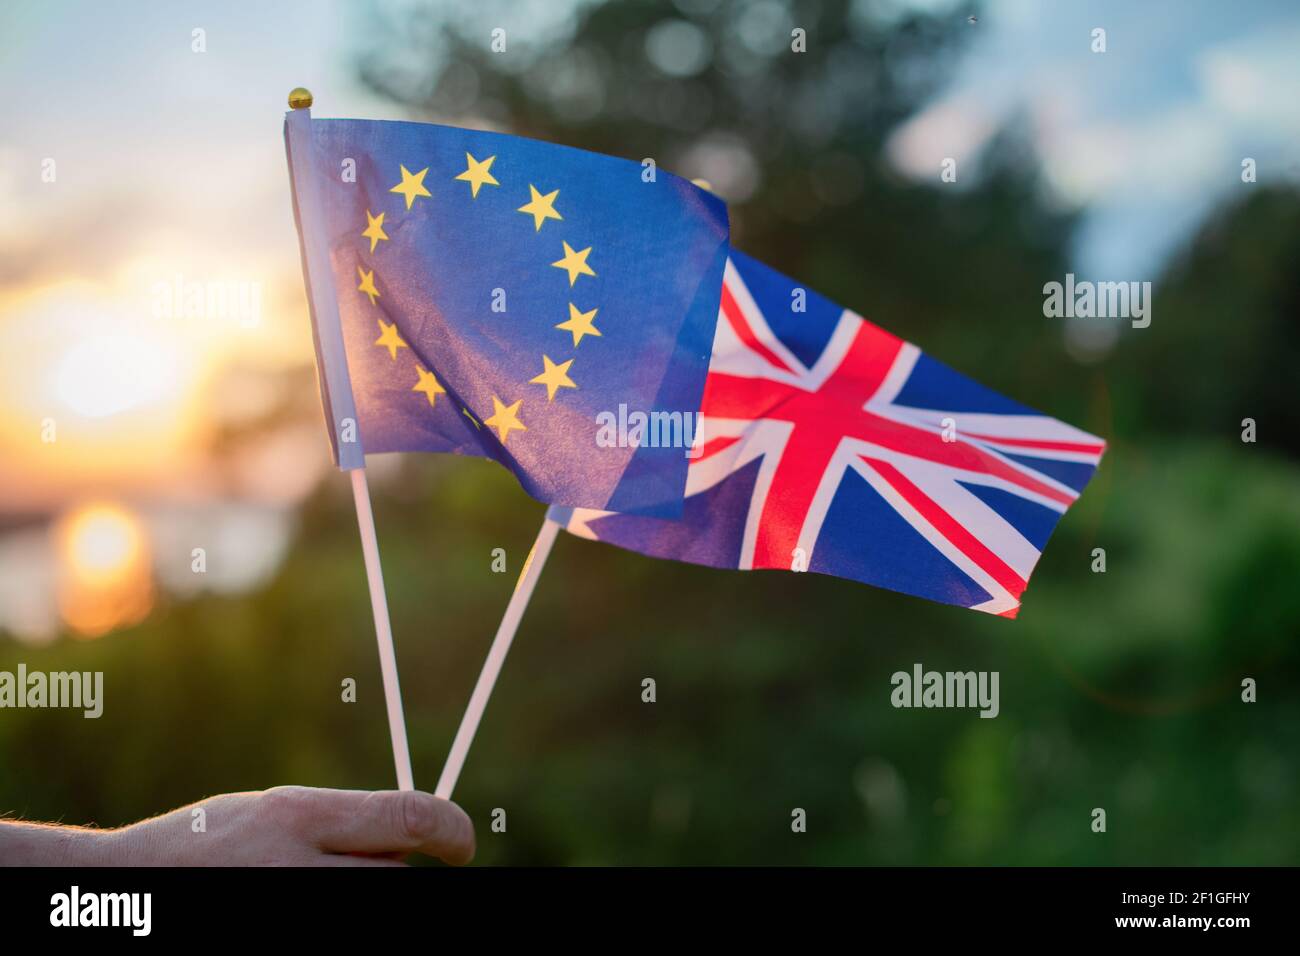 Les drapeaux du Royaume-Uni et de l'Union européenne sont tenus à la main contre le coucher de soleil d'un beau paysage en été. Banque D'Images